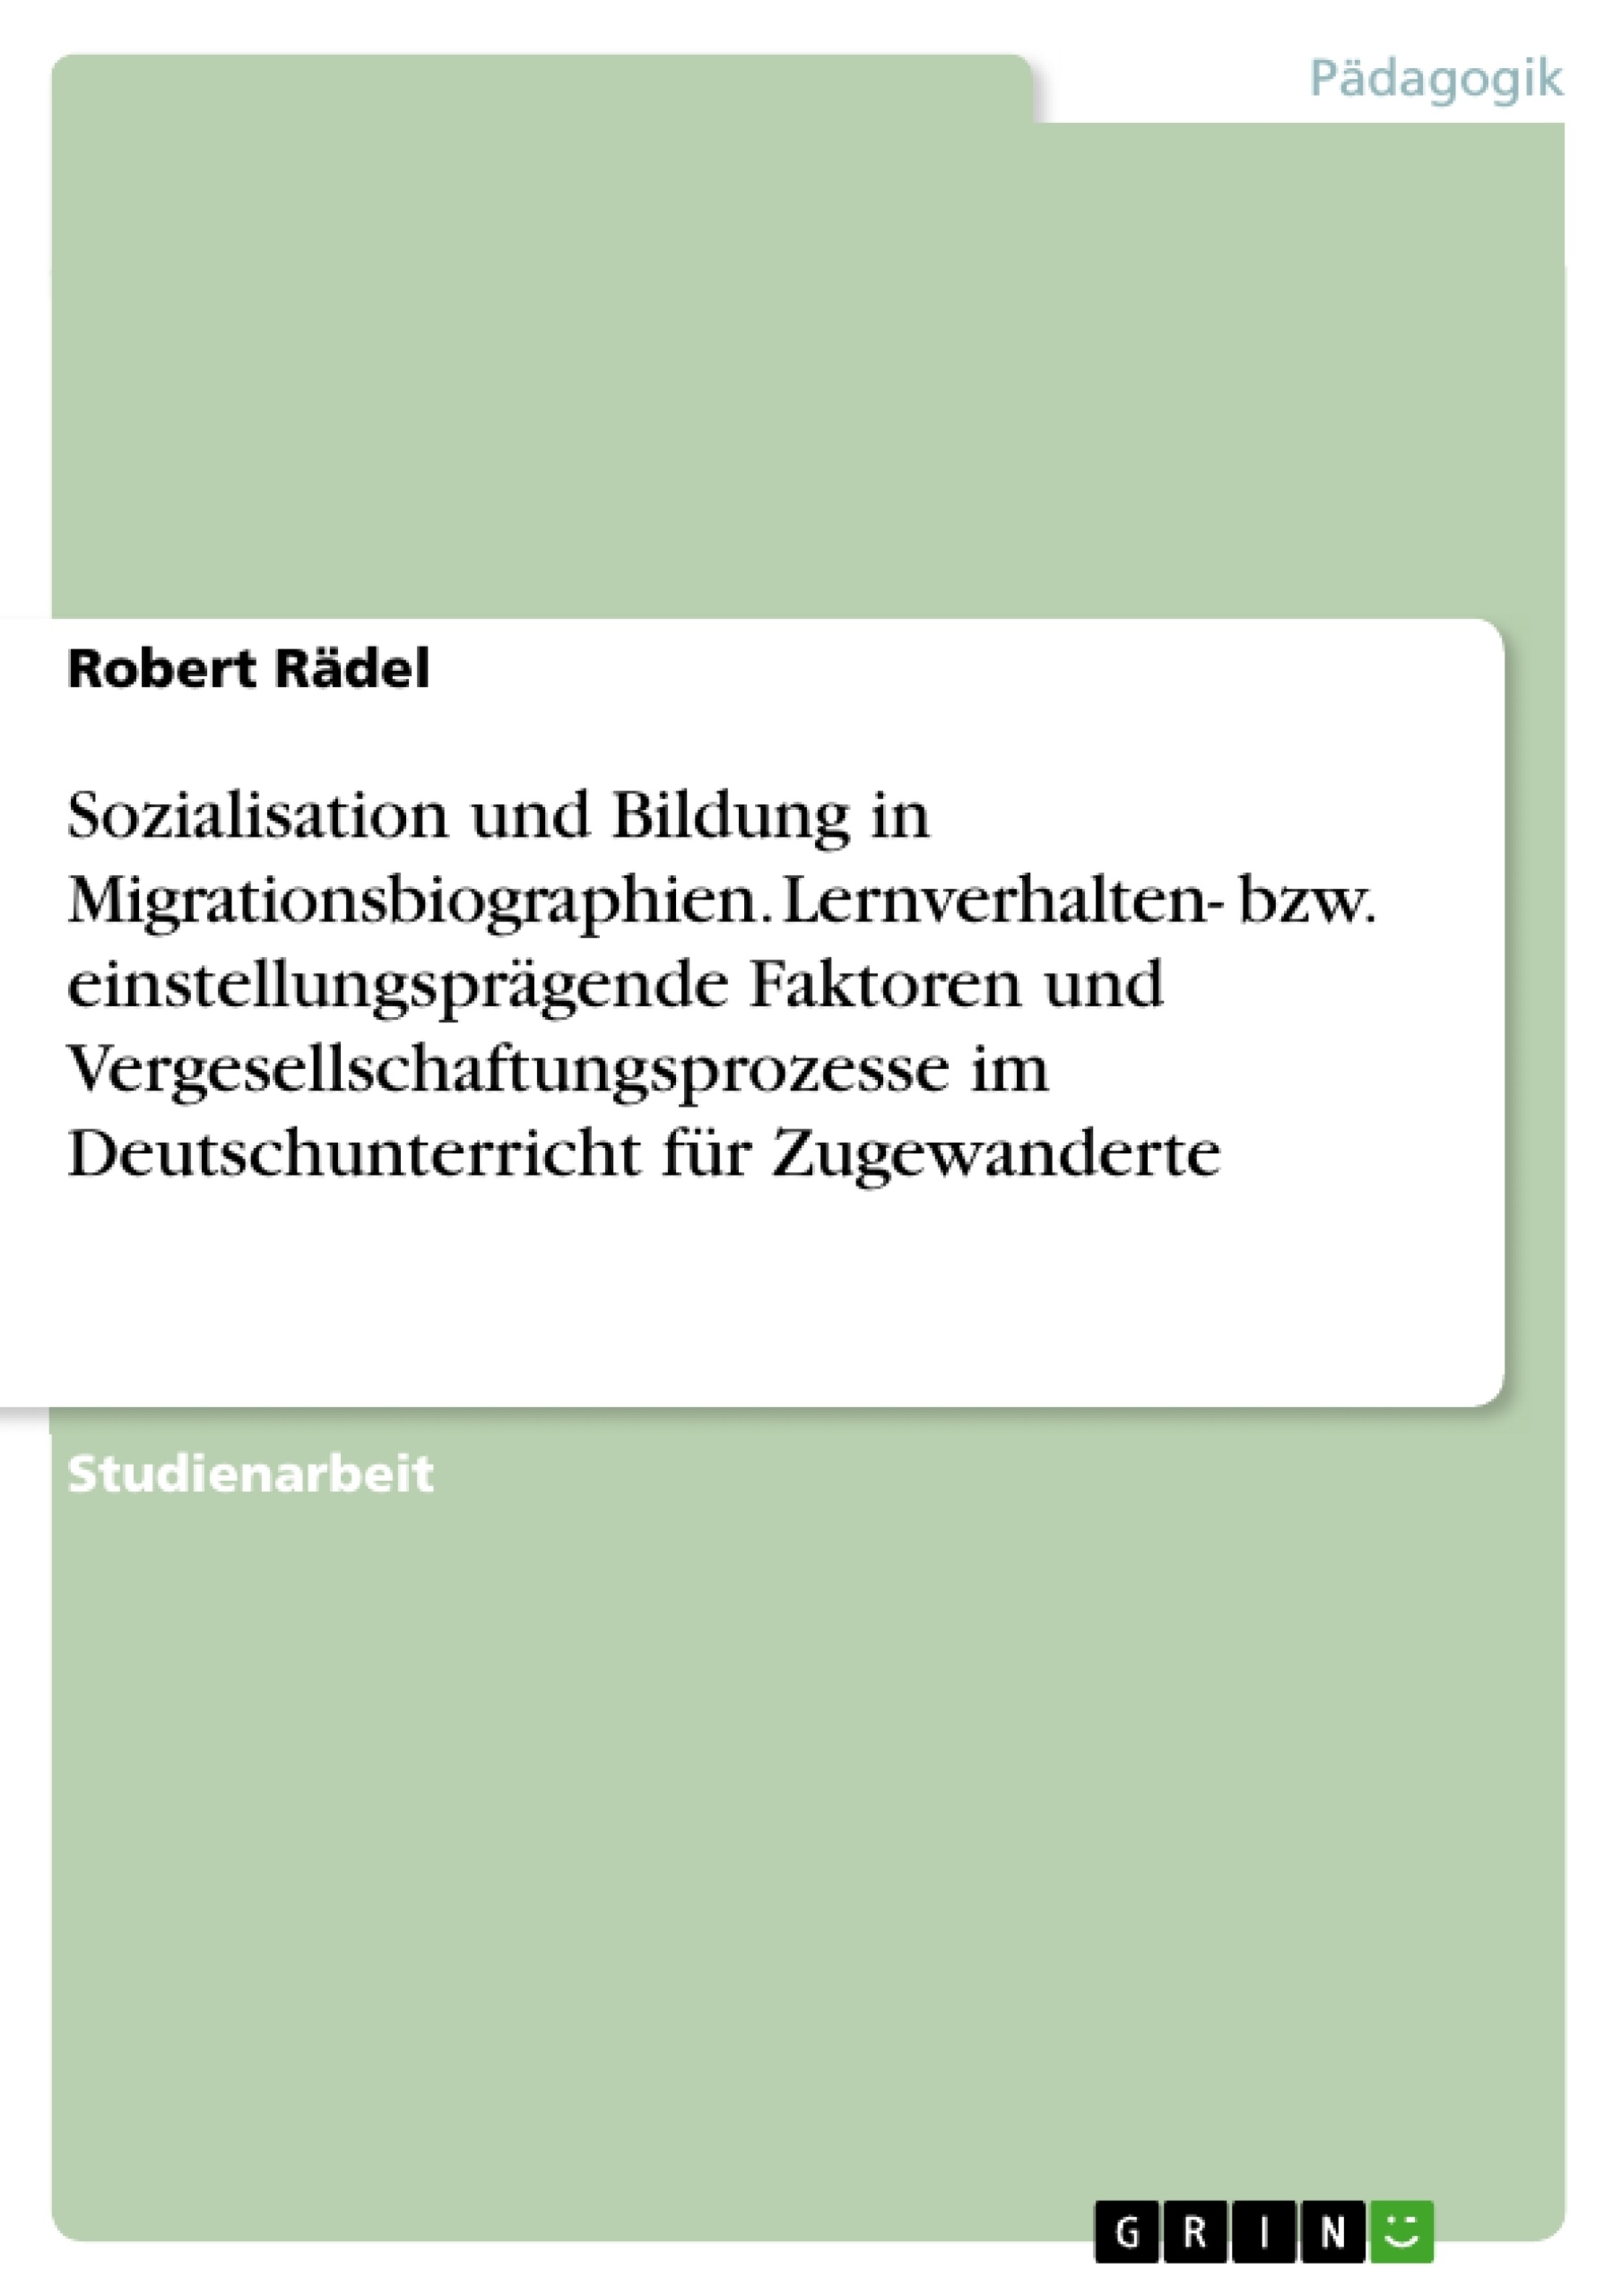 Titel: Sozialisation und Bildung in Migrationsbiographien. Lernverhalten- bzw. einstellungsprägende Faktoren und Vergesellschaftungsprozesse im Deutschunterricht für Zugewanderte